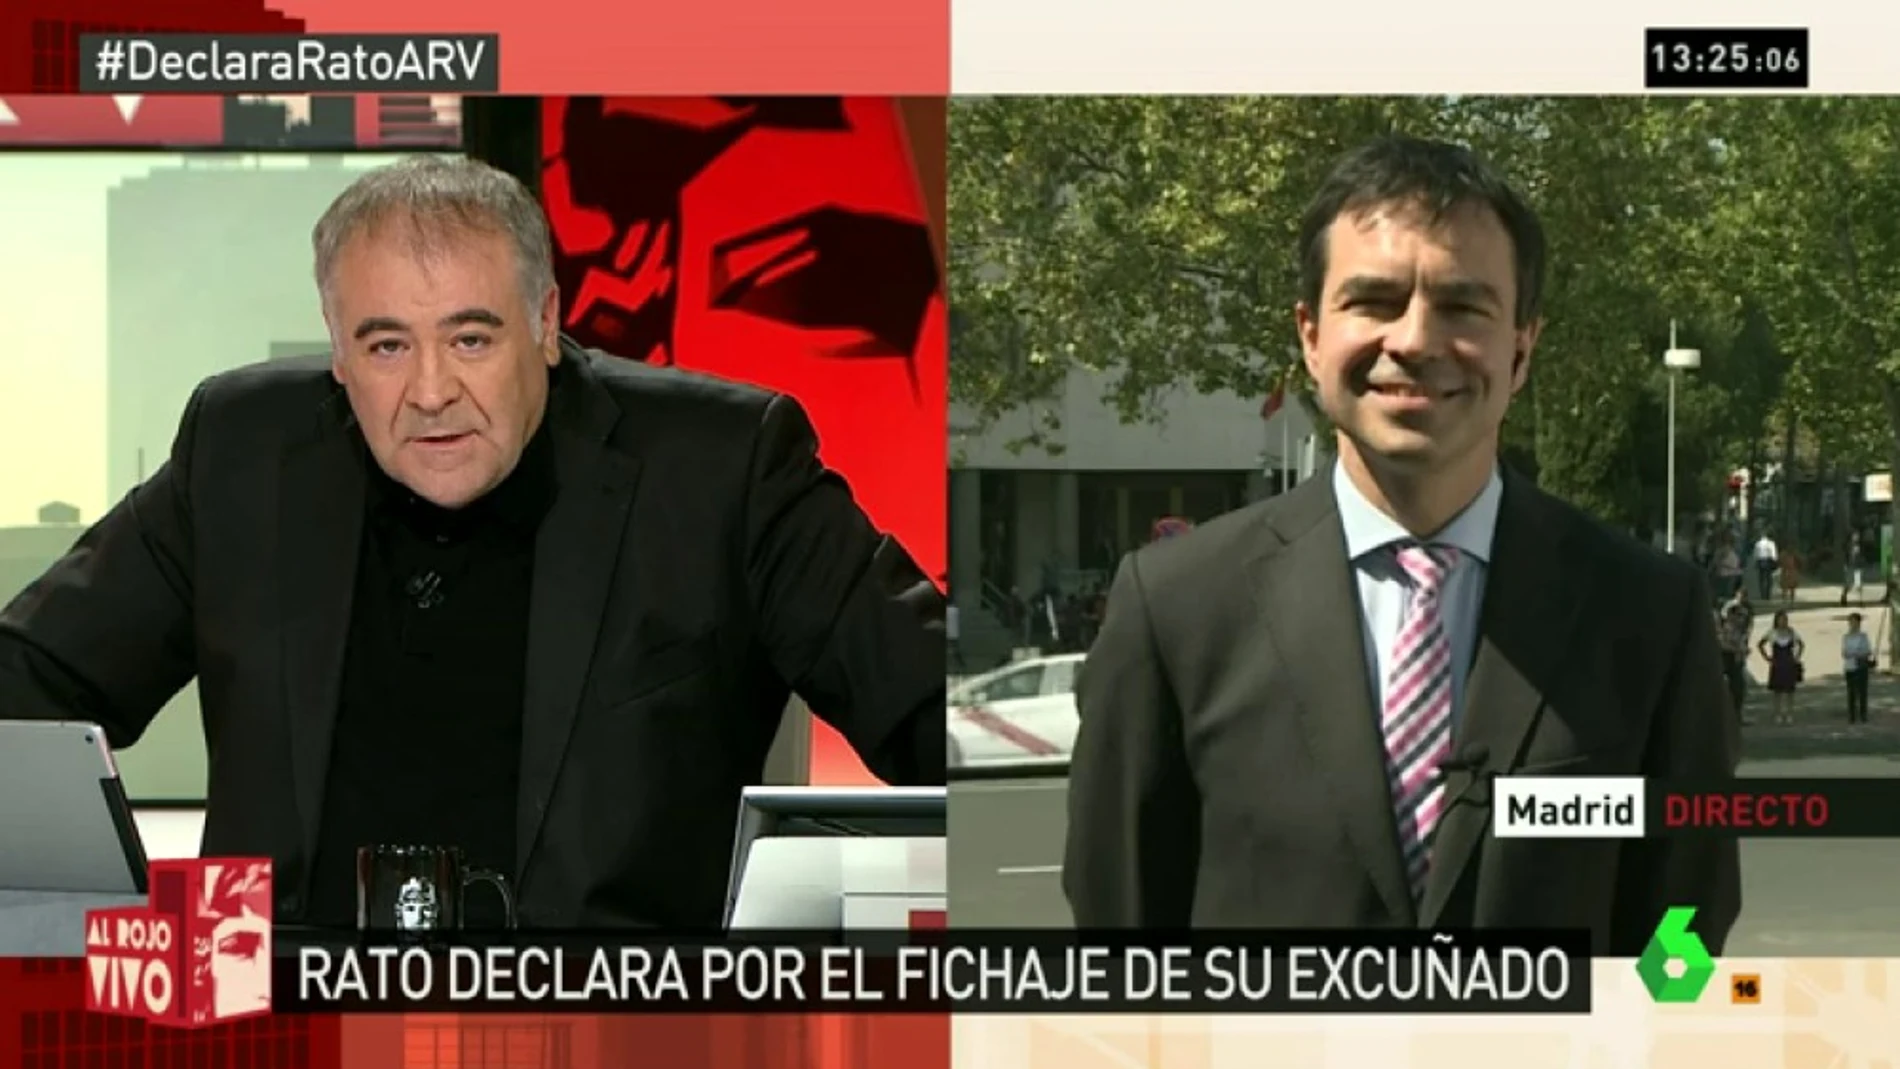 Andrés Herzog: "Bankia, Rato, preferentes... todo está relacionado, es una masiva estafa, un crimen organizado"